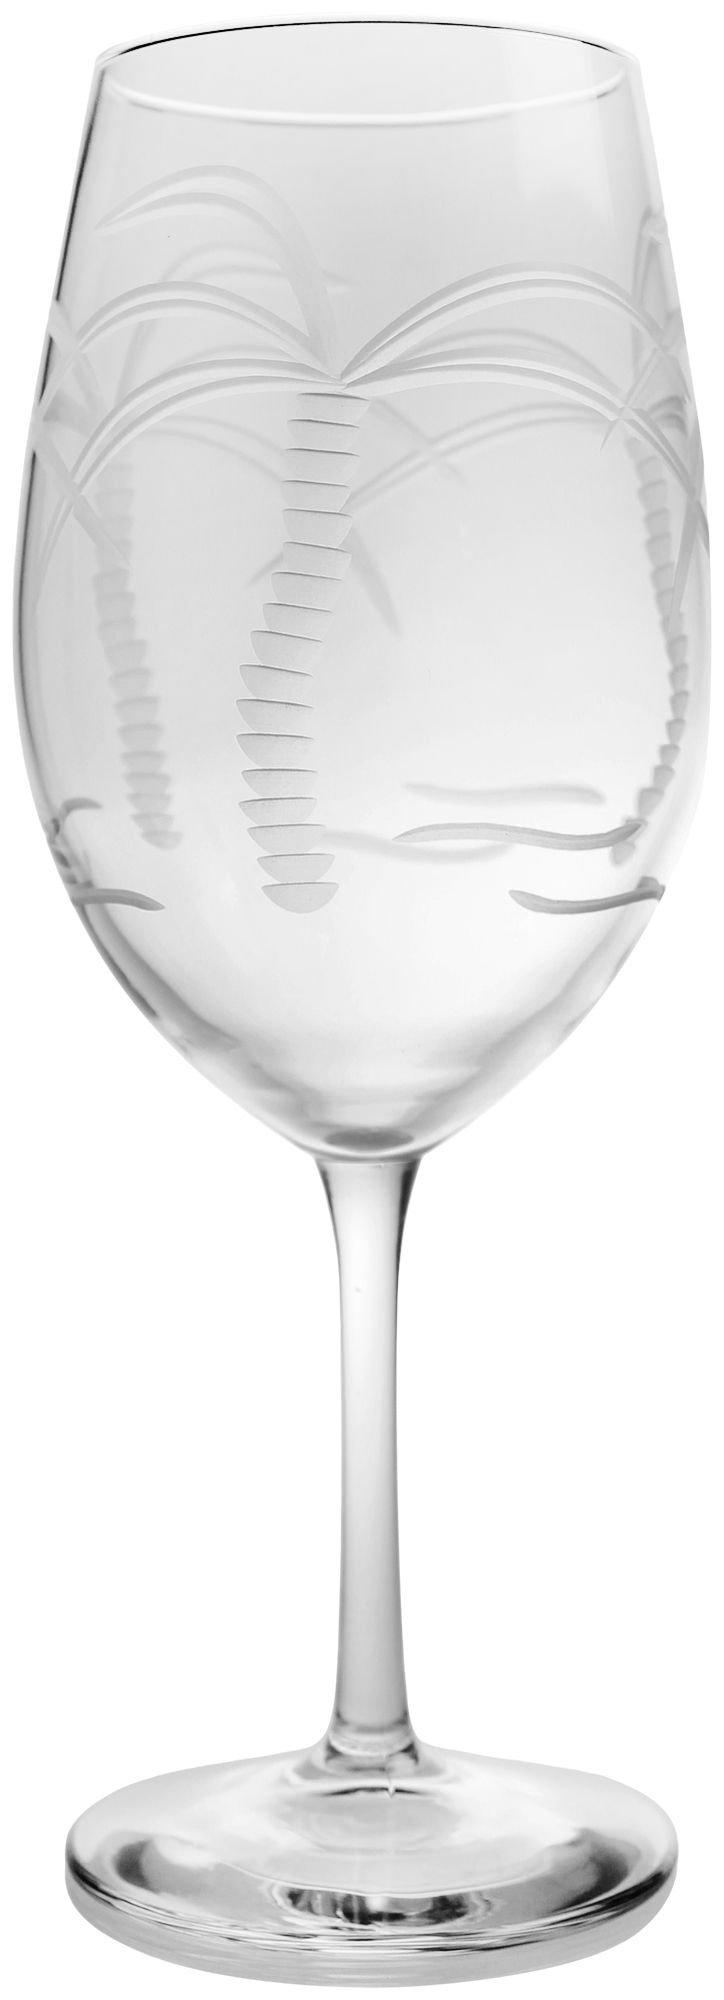 Rolf Glass 18 oz. Palm Tree Wine Goblet